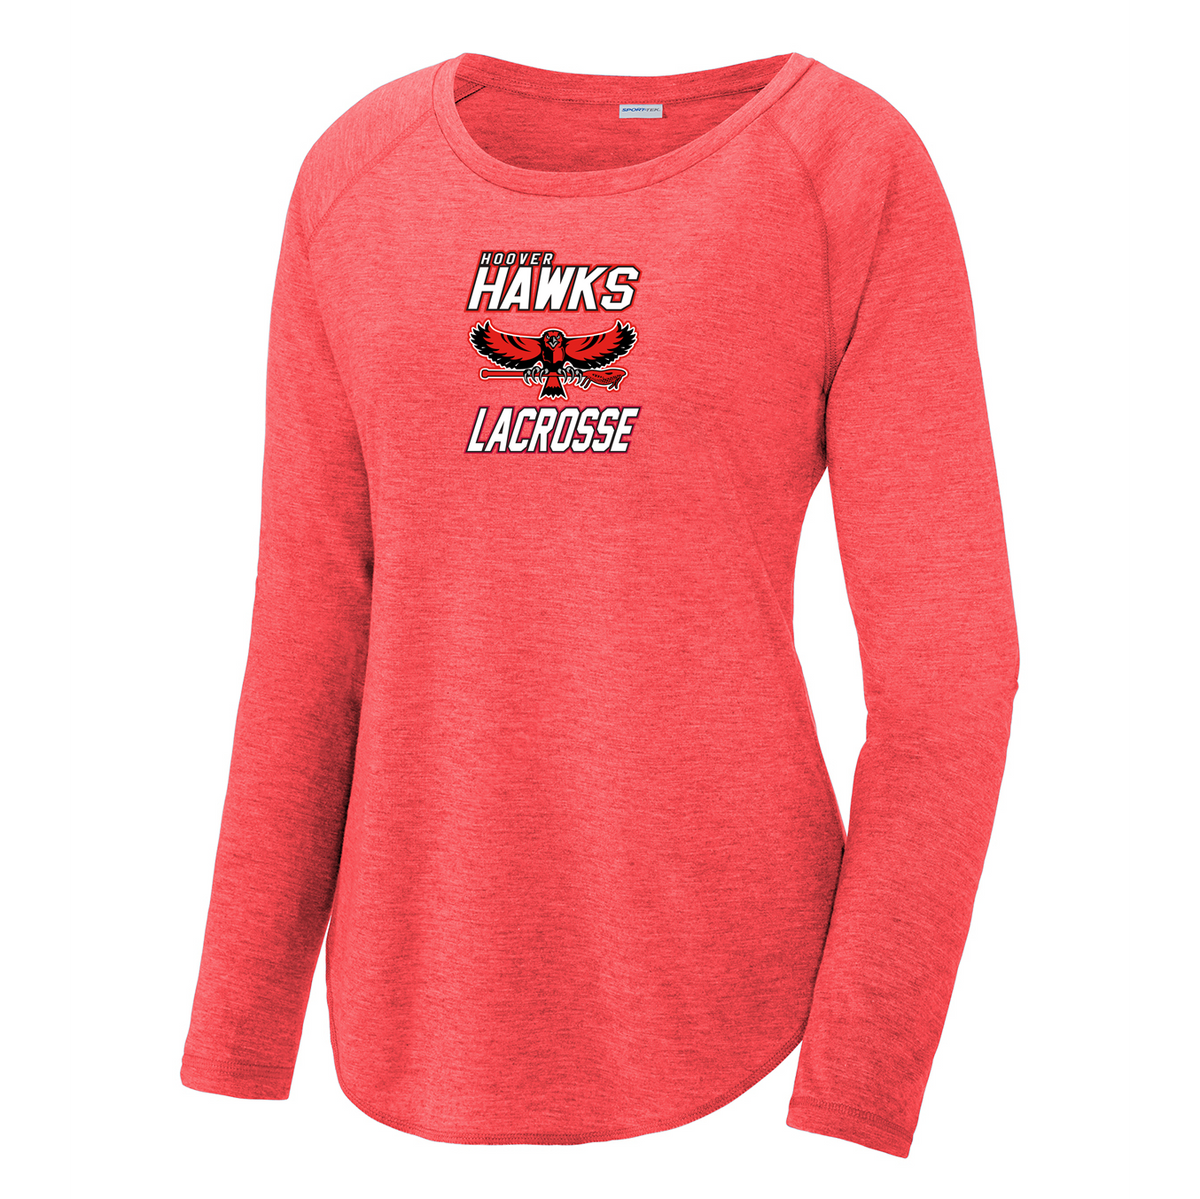 Hawks Lacrosse Women's Raglan Long Sleeve CottonTouch